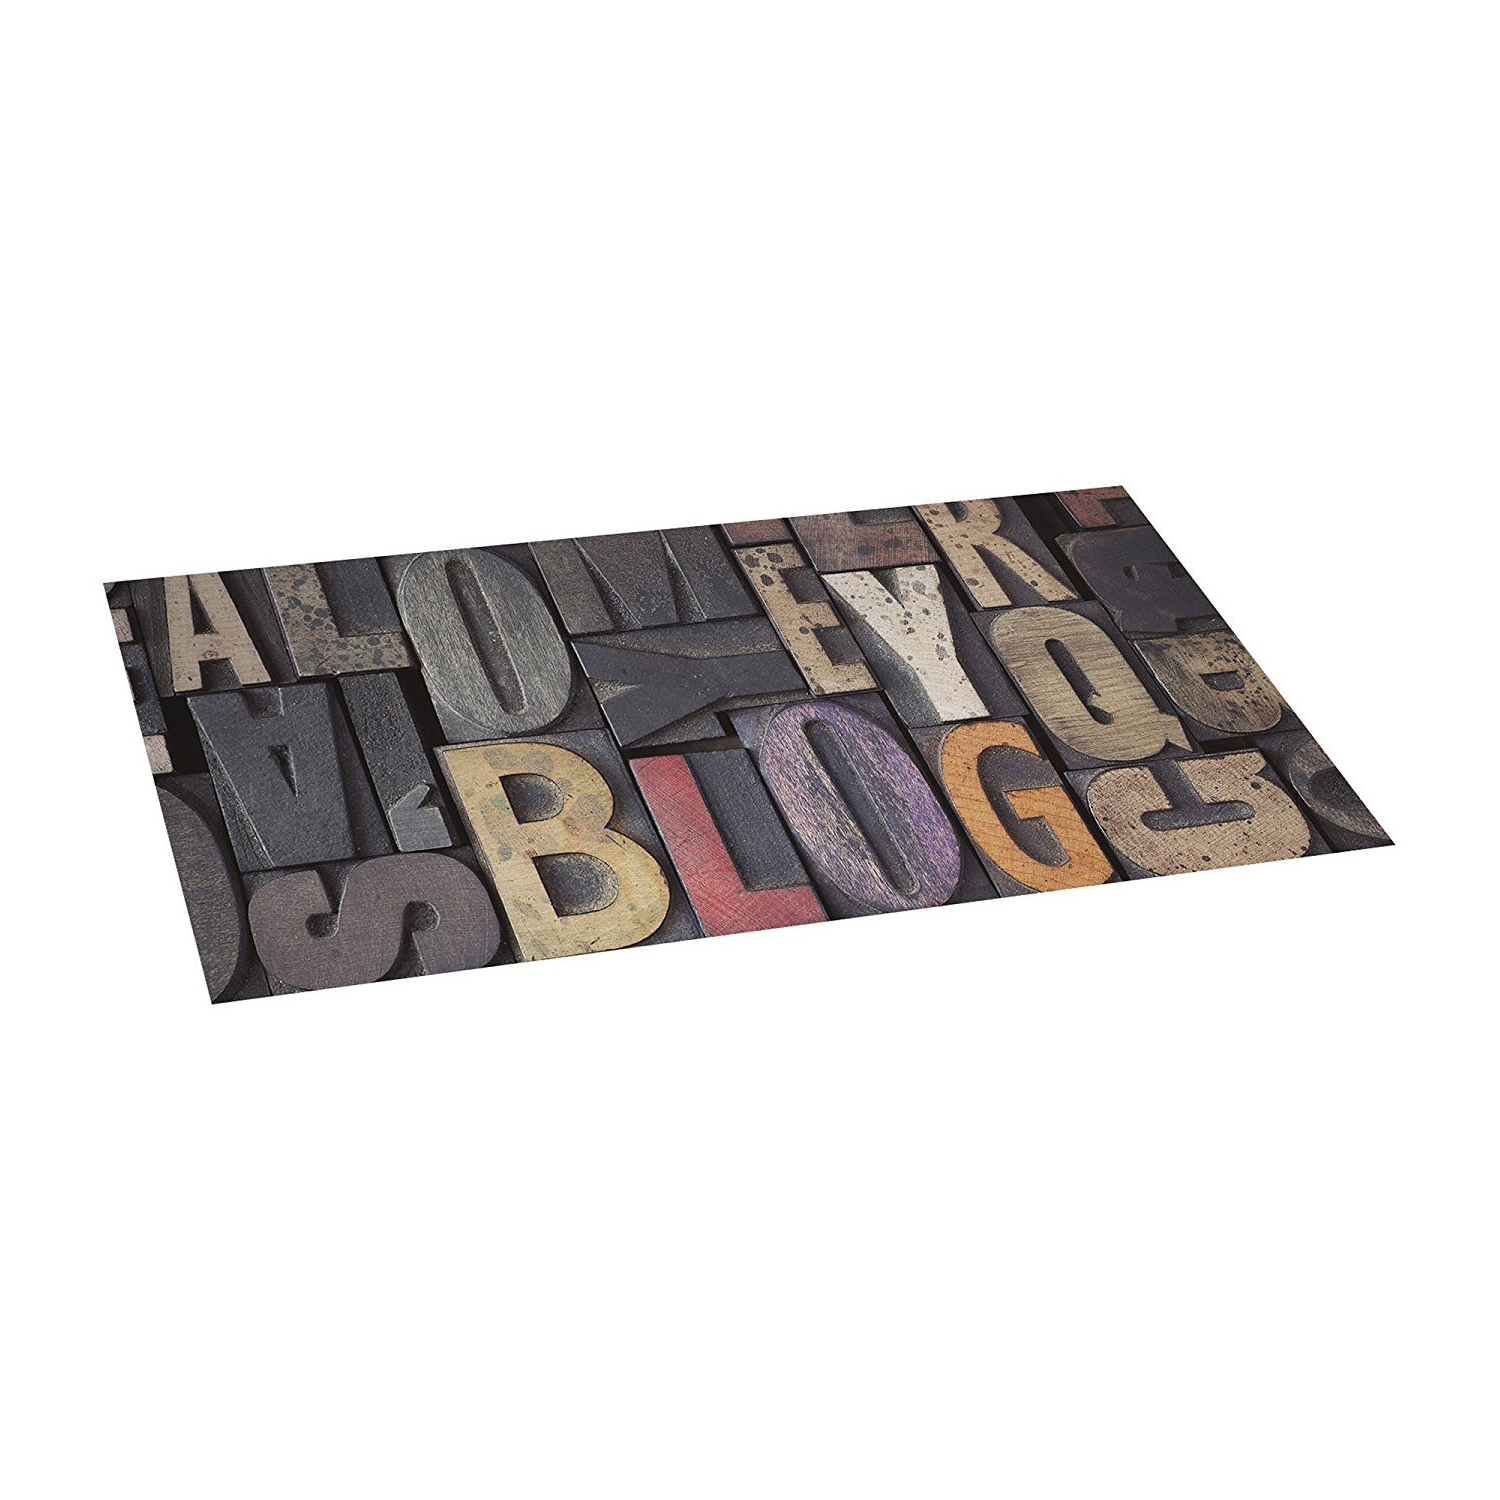 Tappeto vinilico 50 x 110 cm con fondo antiscivolo croma wood letras pvc